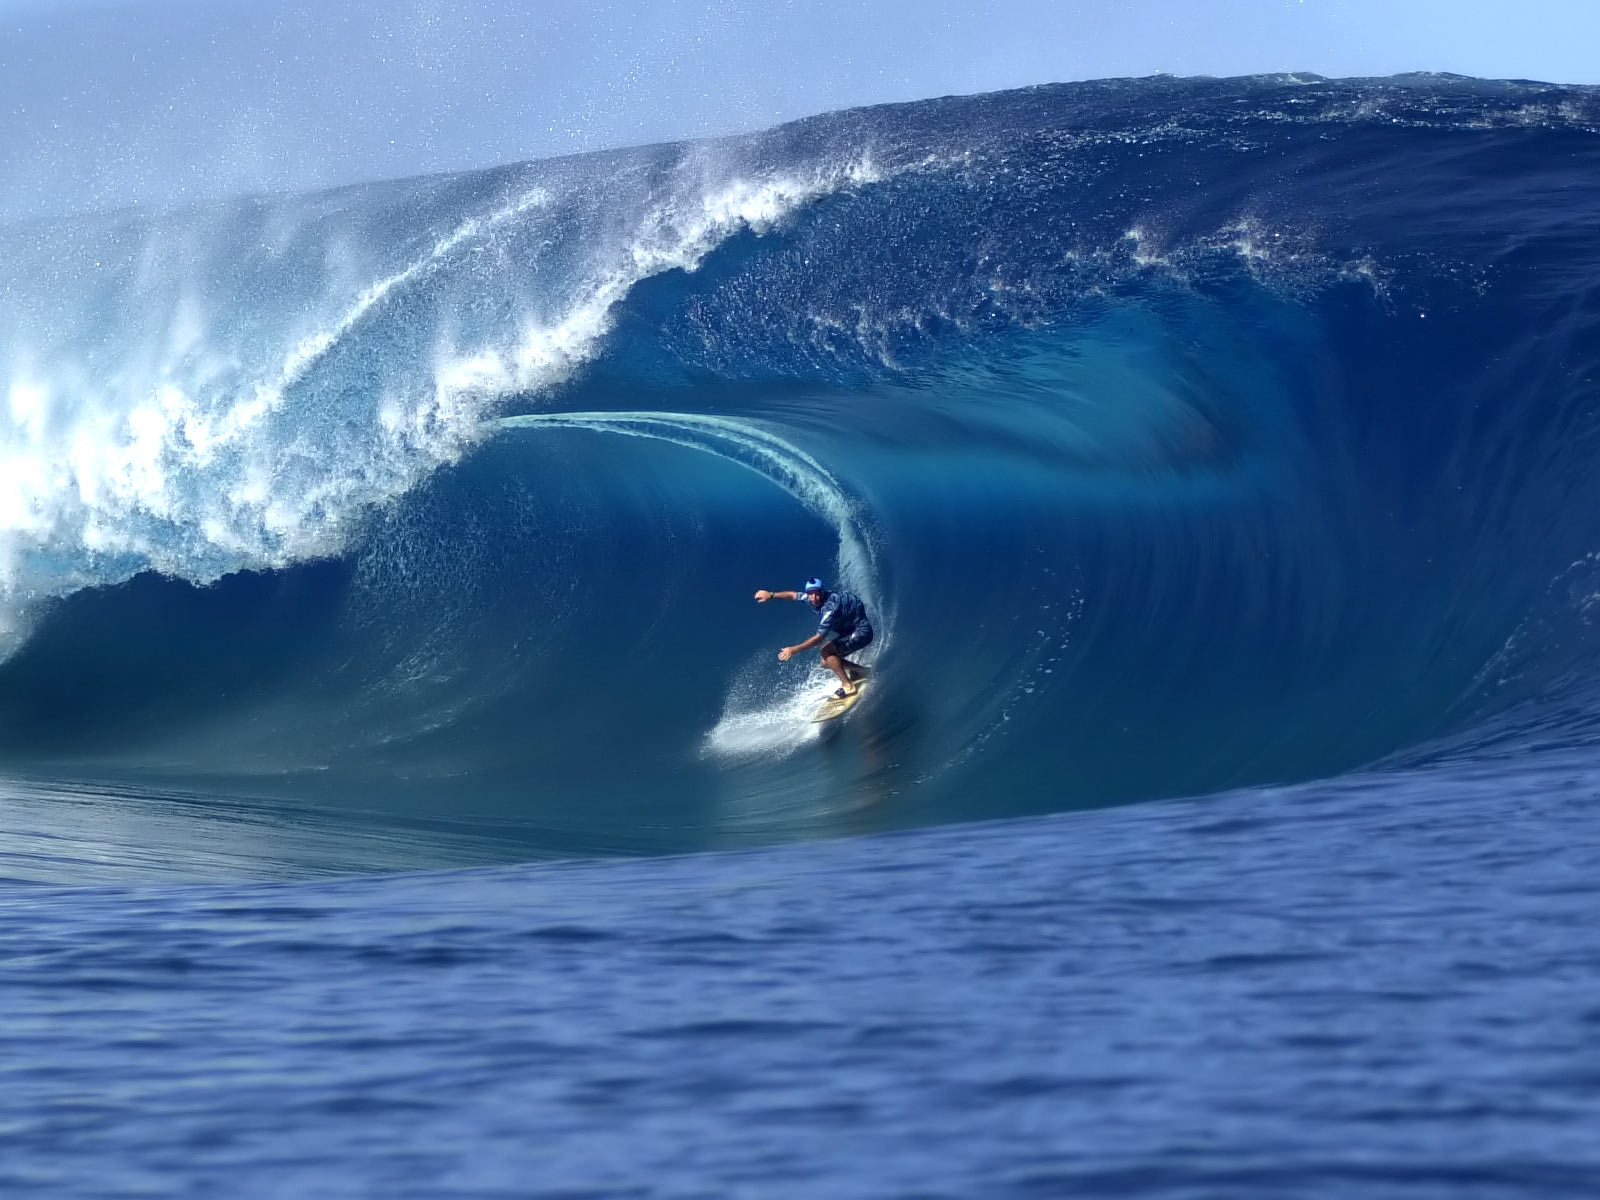 Surfing Hawaii Puter Desktop Wallpaper Pictures Image